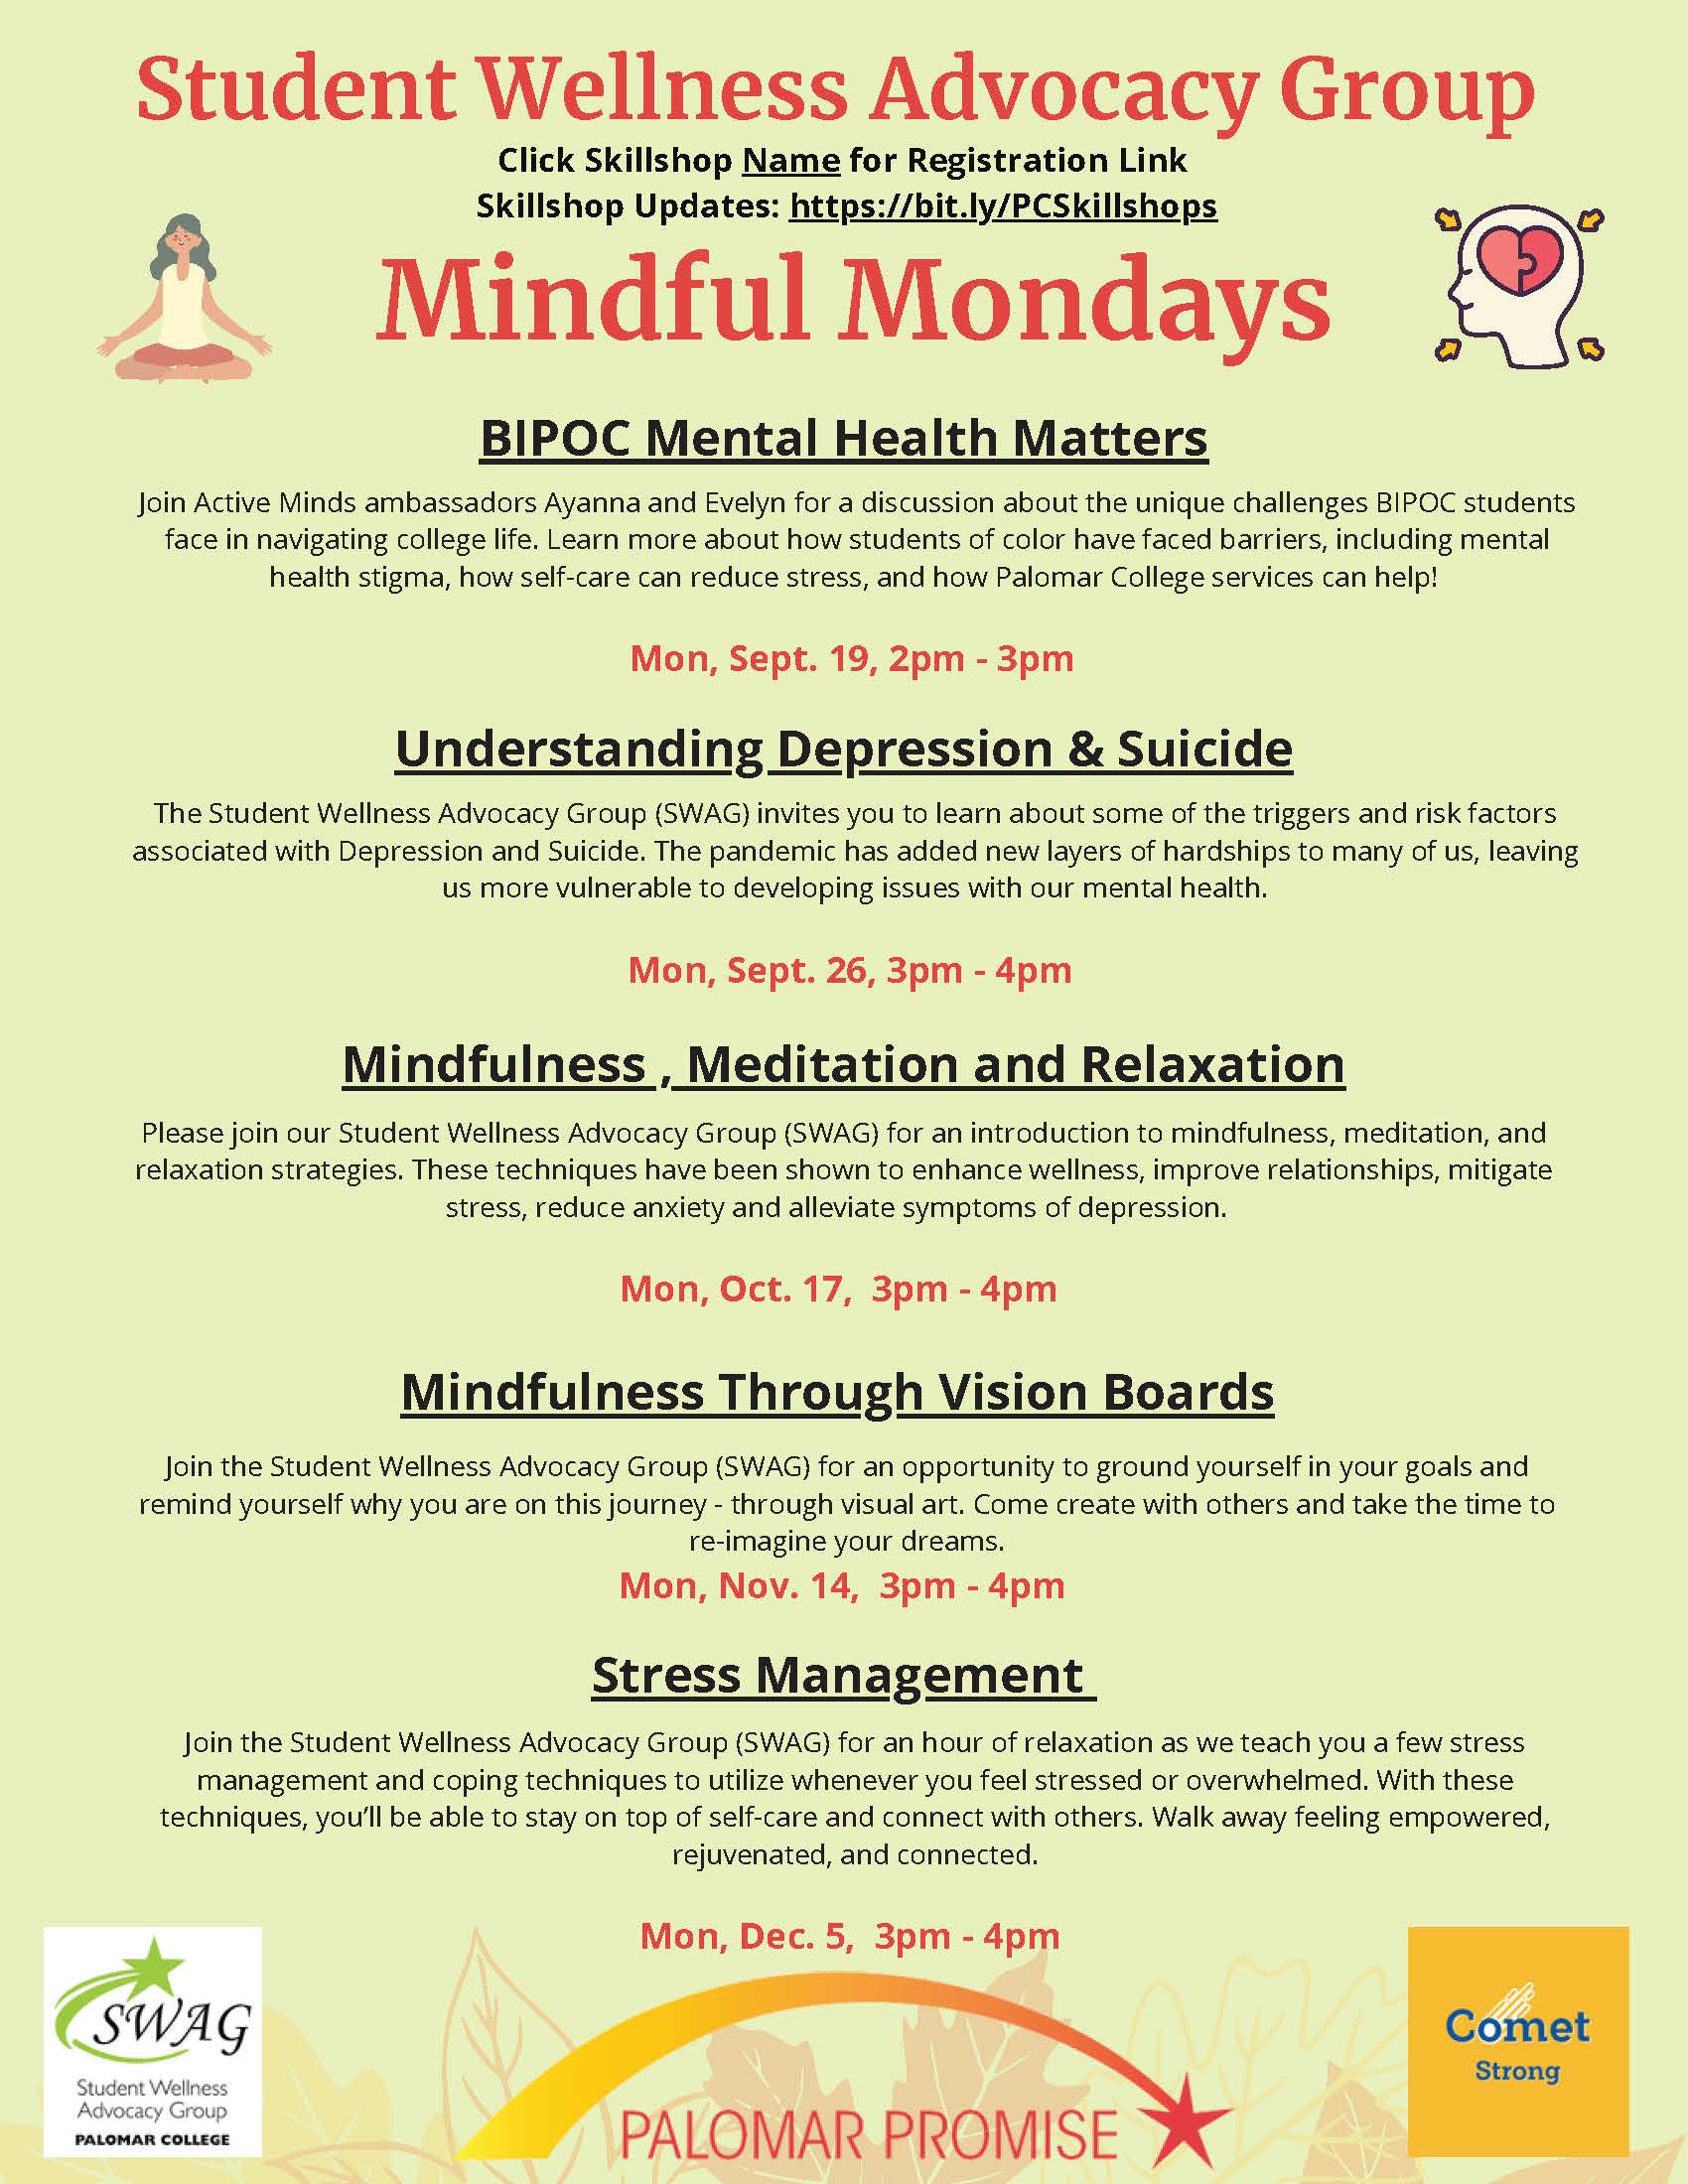 Skillshop flyer for Mindful Mondays